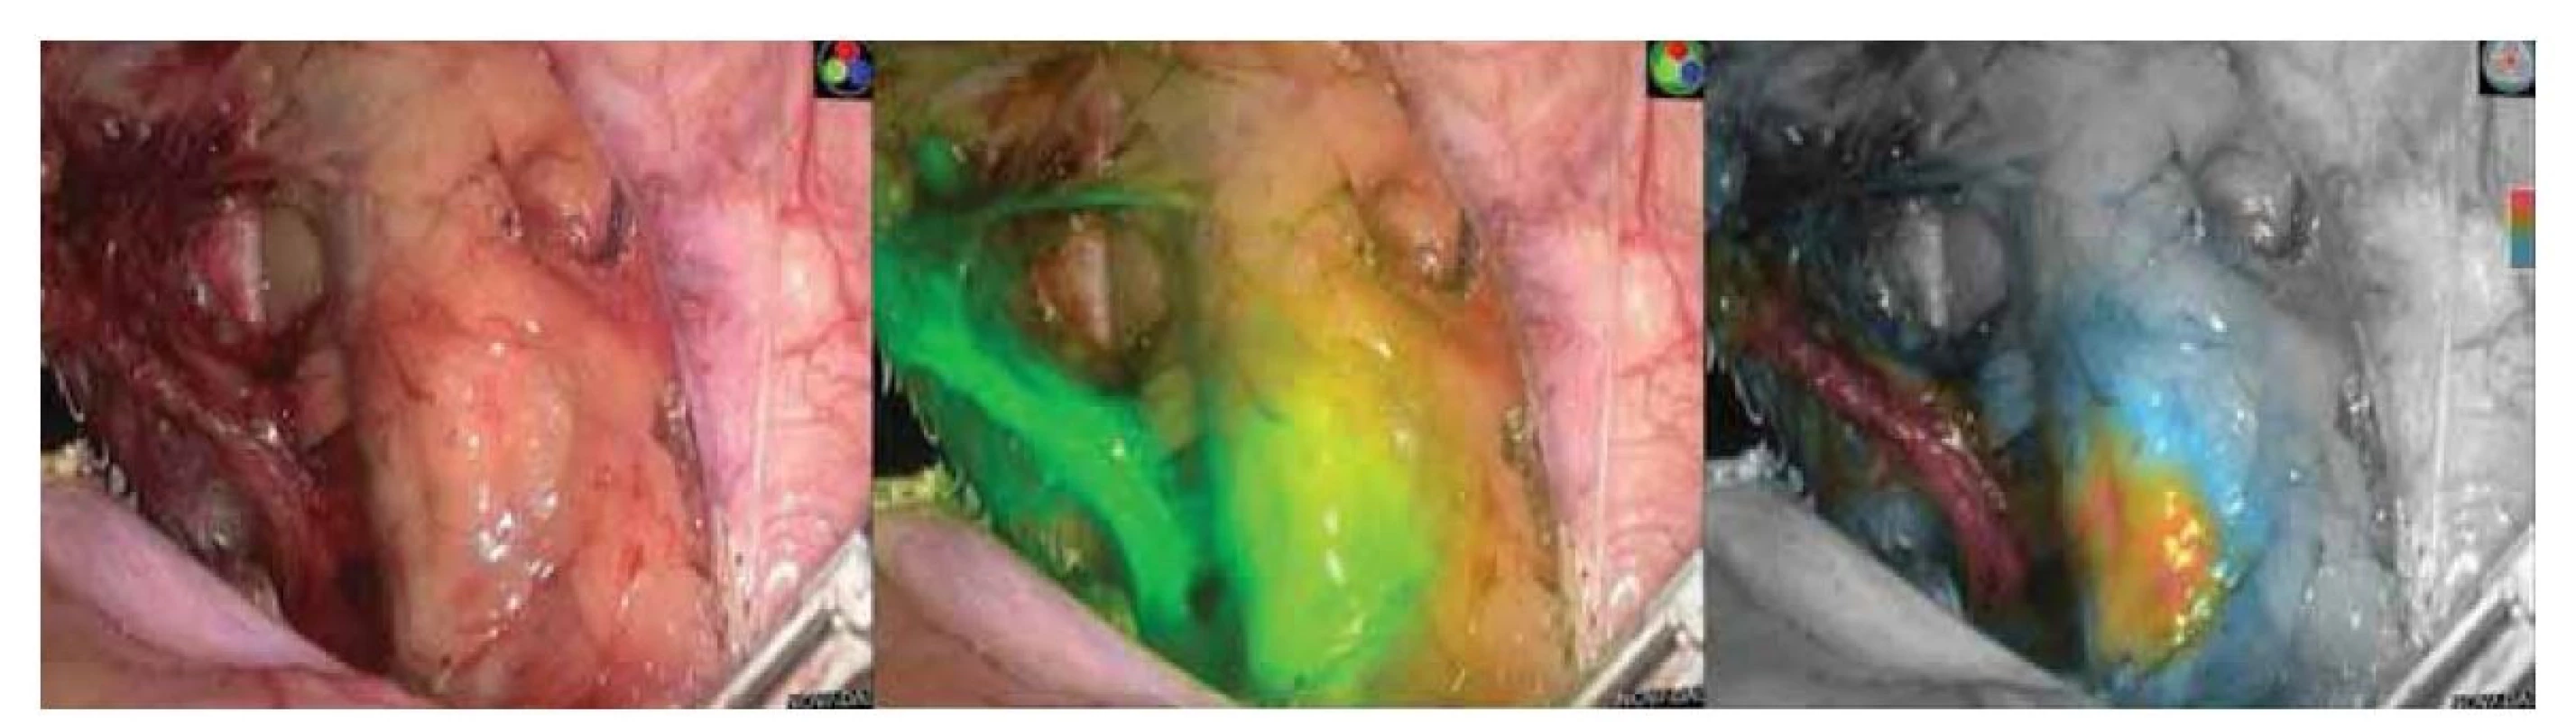 Ukázka laparoskopické detekce indocyaninového zeleného barviva pomocí systému Novadaq. Obrázek vlevo s
klasickým laparoskopickým obrazem, uprostřed v real-time detekčním módu, vpravo v real-time kvantifikačním módu.<br>
(Zdroj: Gynekologicko-porodnické oddělení, Nemocnice Nový Jičín AGEL a.s.).<br>
Fig. 1. Demonstration of laparoscopic detection of indocyanine green dye using the Novadaq system. Image on the left with
a classic laparoscopic image, in the middle in real-time detection mode, and on the right in real-time quantification mode.<br>
(Source: Department of Gynecology and Obstetrics, Hospital Nový Jičín AGEL a.s.).